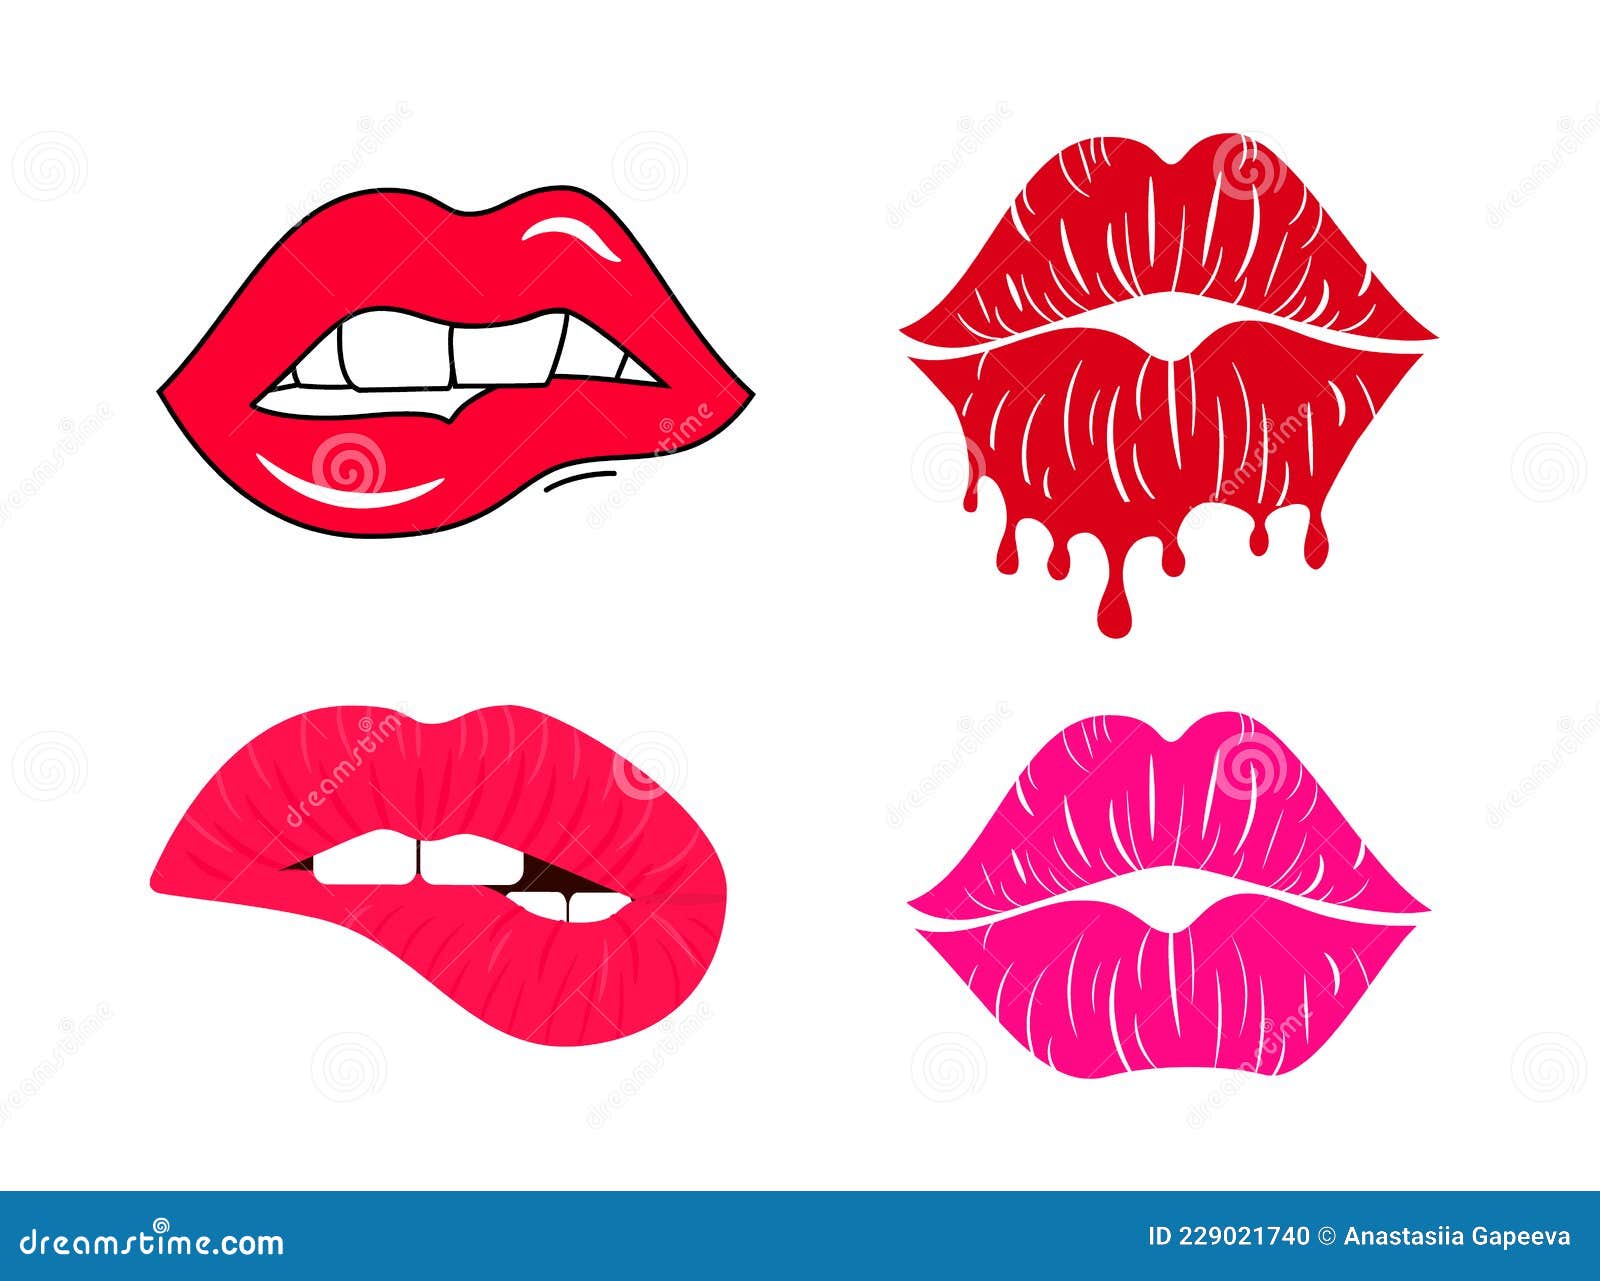 Red Lip Biting Vector Illustration | CartoonDealer.com #44493586